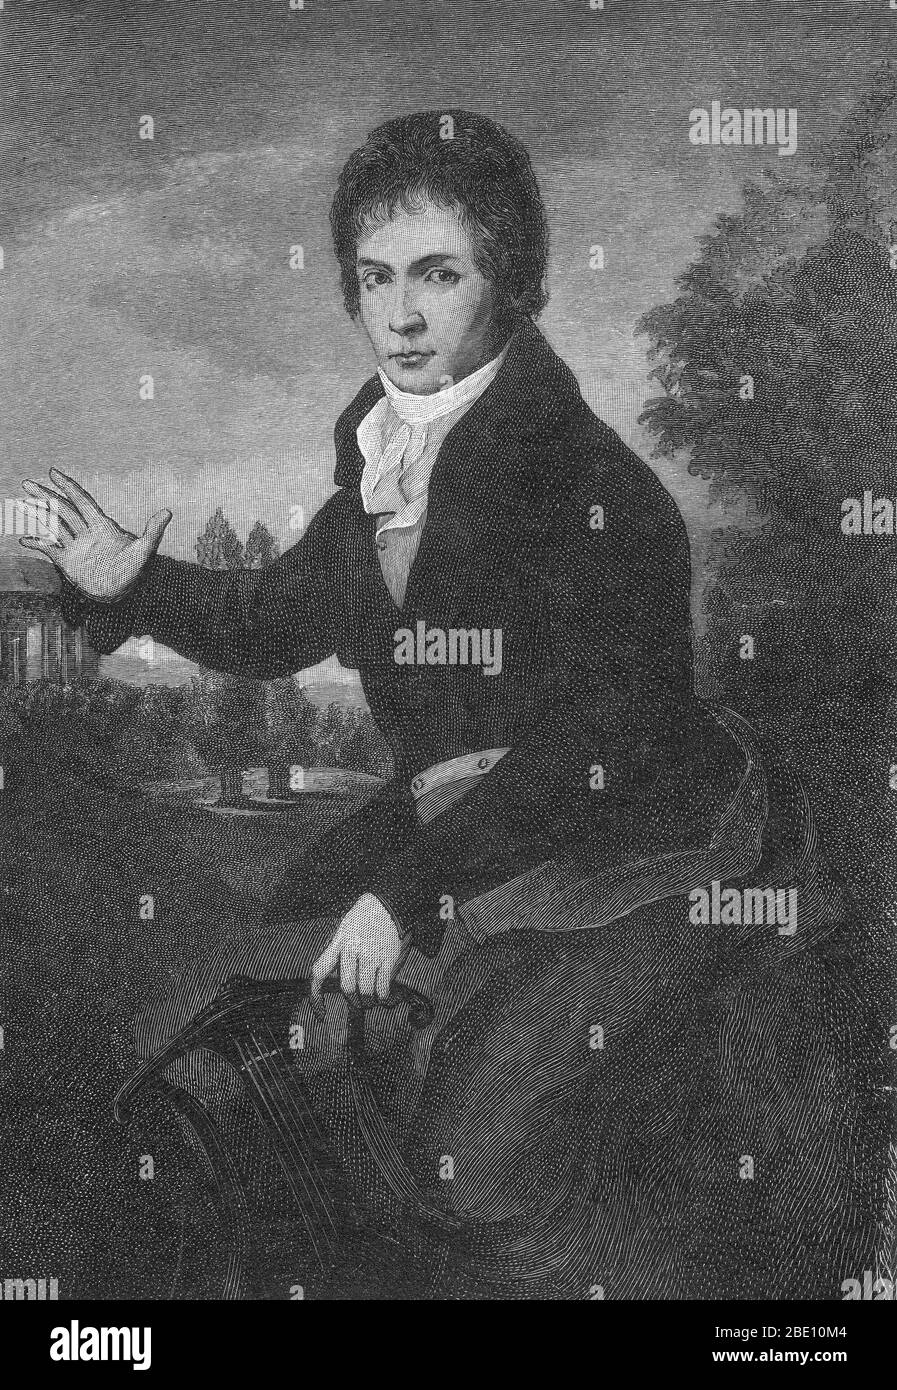 Ludwig van Beethoven (bautizado el 17 de diciembre de 1770 - el 26 de marzo de 1827) fue un compositor y pianista alemán. Figura crucial en la transición entre las épocas clásica y romántica en la música de arte occidental, sigue siendo uno de los más famosos e influyentes de todos los autores. Beethoven nació en Bonn, pero se trasladó a Viena a principios de sus 20 años, estudiando con Joseph Haydn y ganando rápidamente una reputación como pianista virtuoso. Su audición comenzó a deteriorarse a finales de los veinte años, pero continuó componiendo, llevando a cabo y realizando, incluso después de hacerse completamente sordo. En aproximadamente 1800 su audiencia comenzó a disuadir Foto de stock